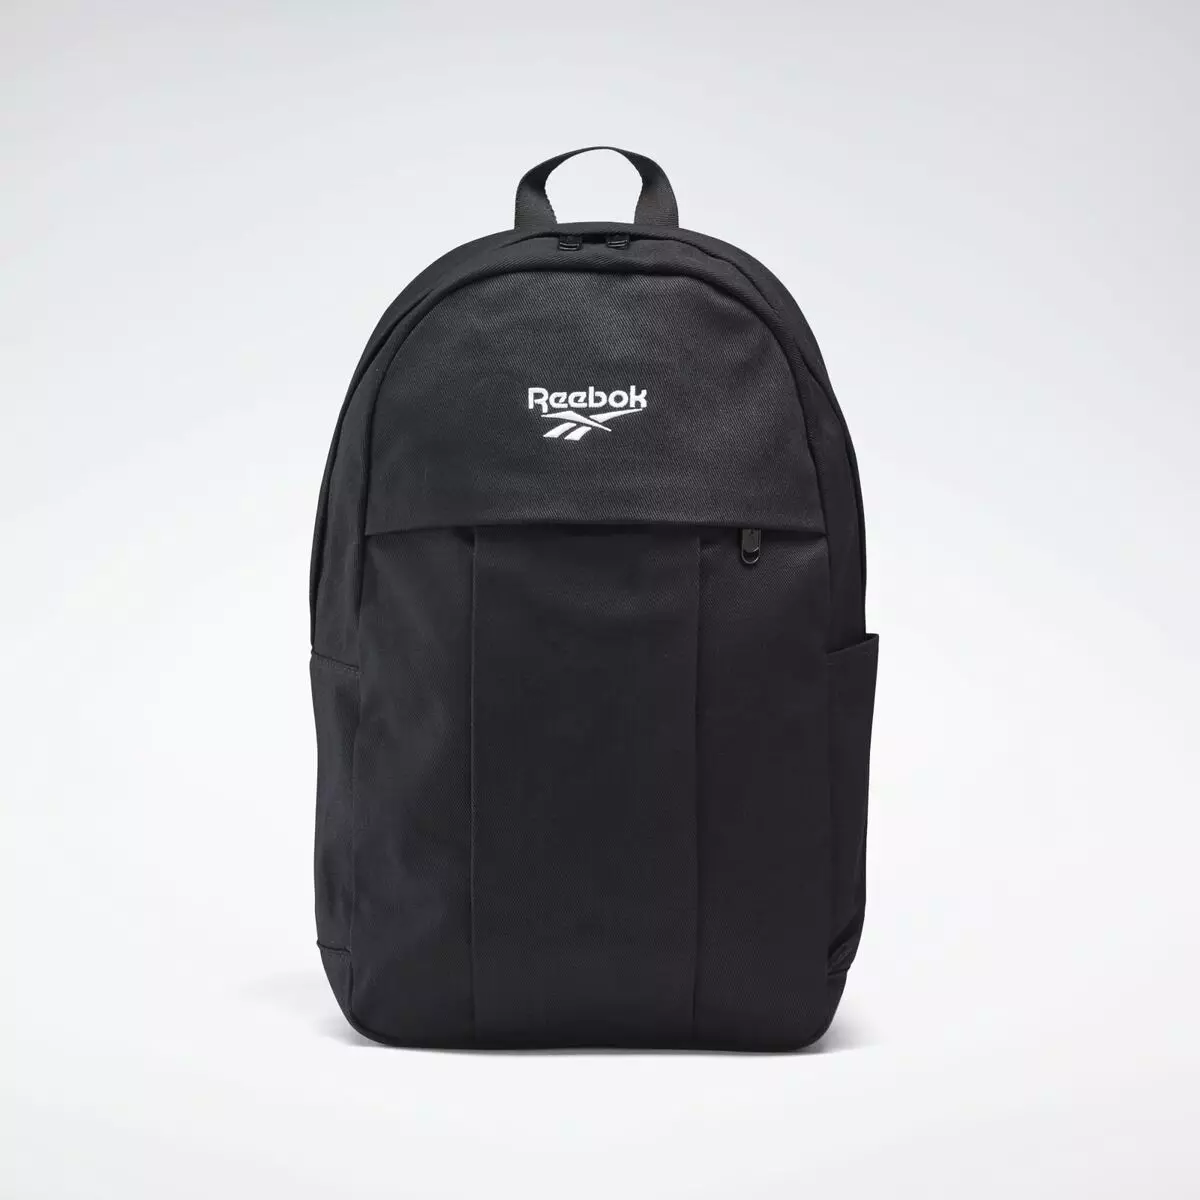 Reebok-backpack: froulike en manlju modellen. Wyt en swart, roze en blau, bags, stevige sportmodellen 23679_13